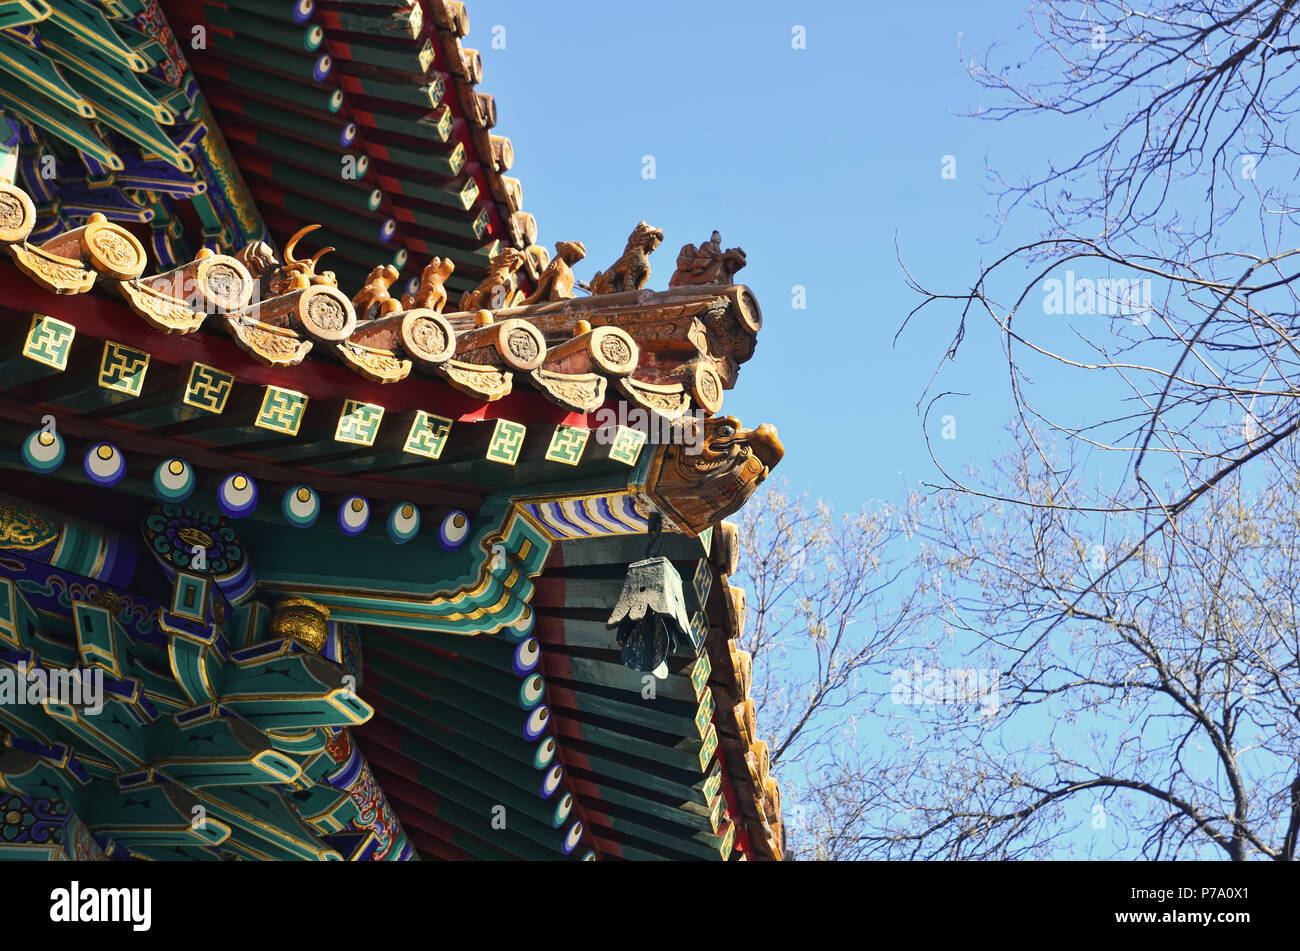 Détail du toit du pavillon chinois à Pékin, Temple de Yonghe Banque D'Images